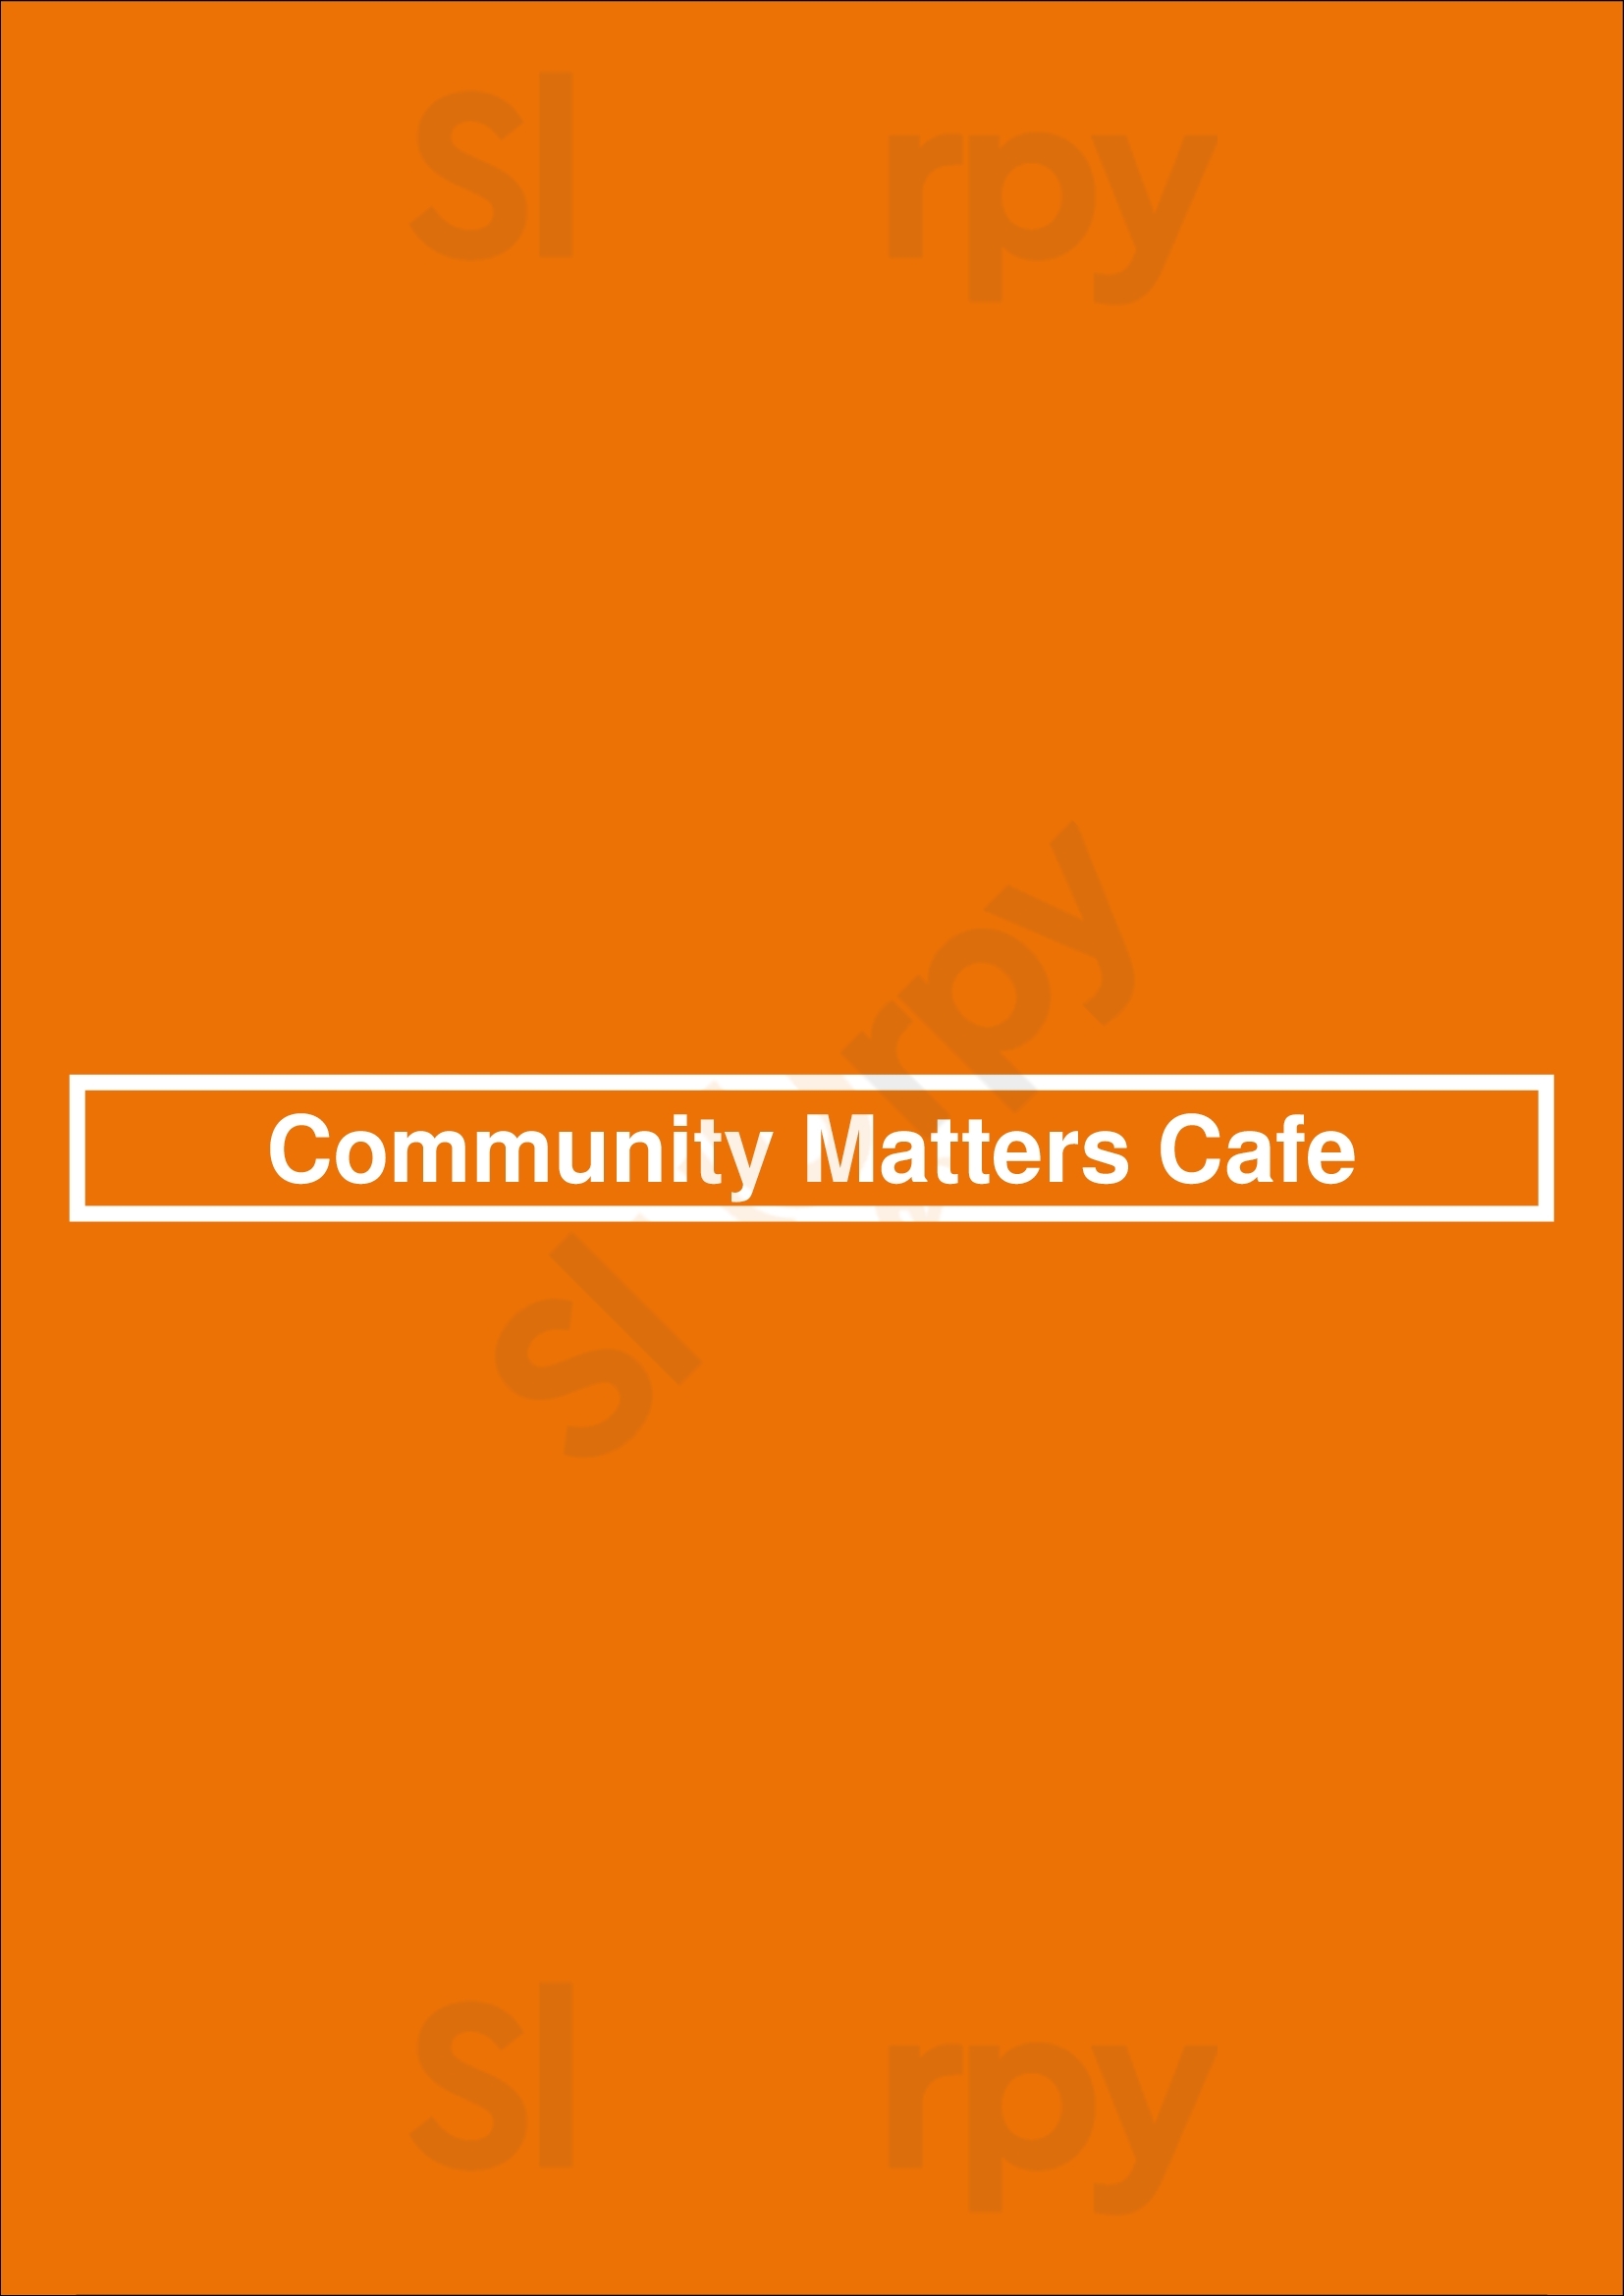 Community Matters Cafe Charlotte Menu - 1